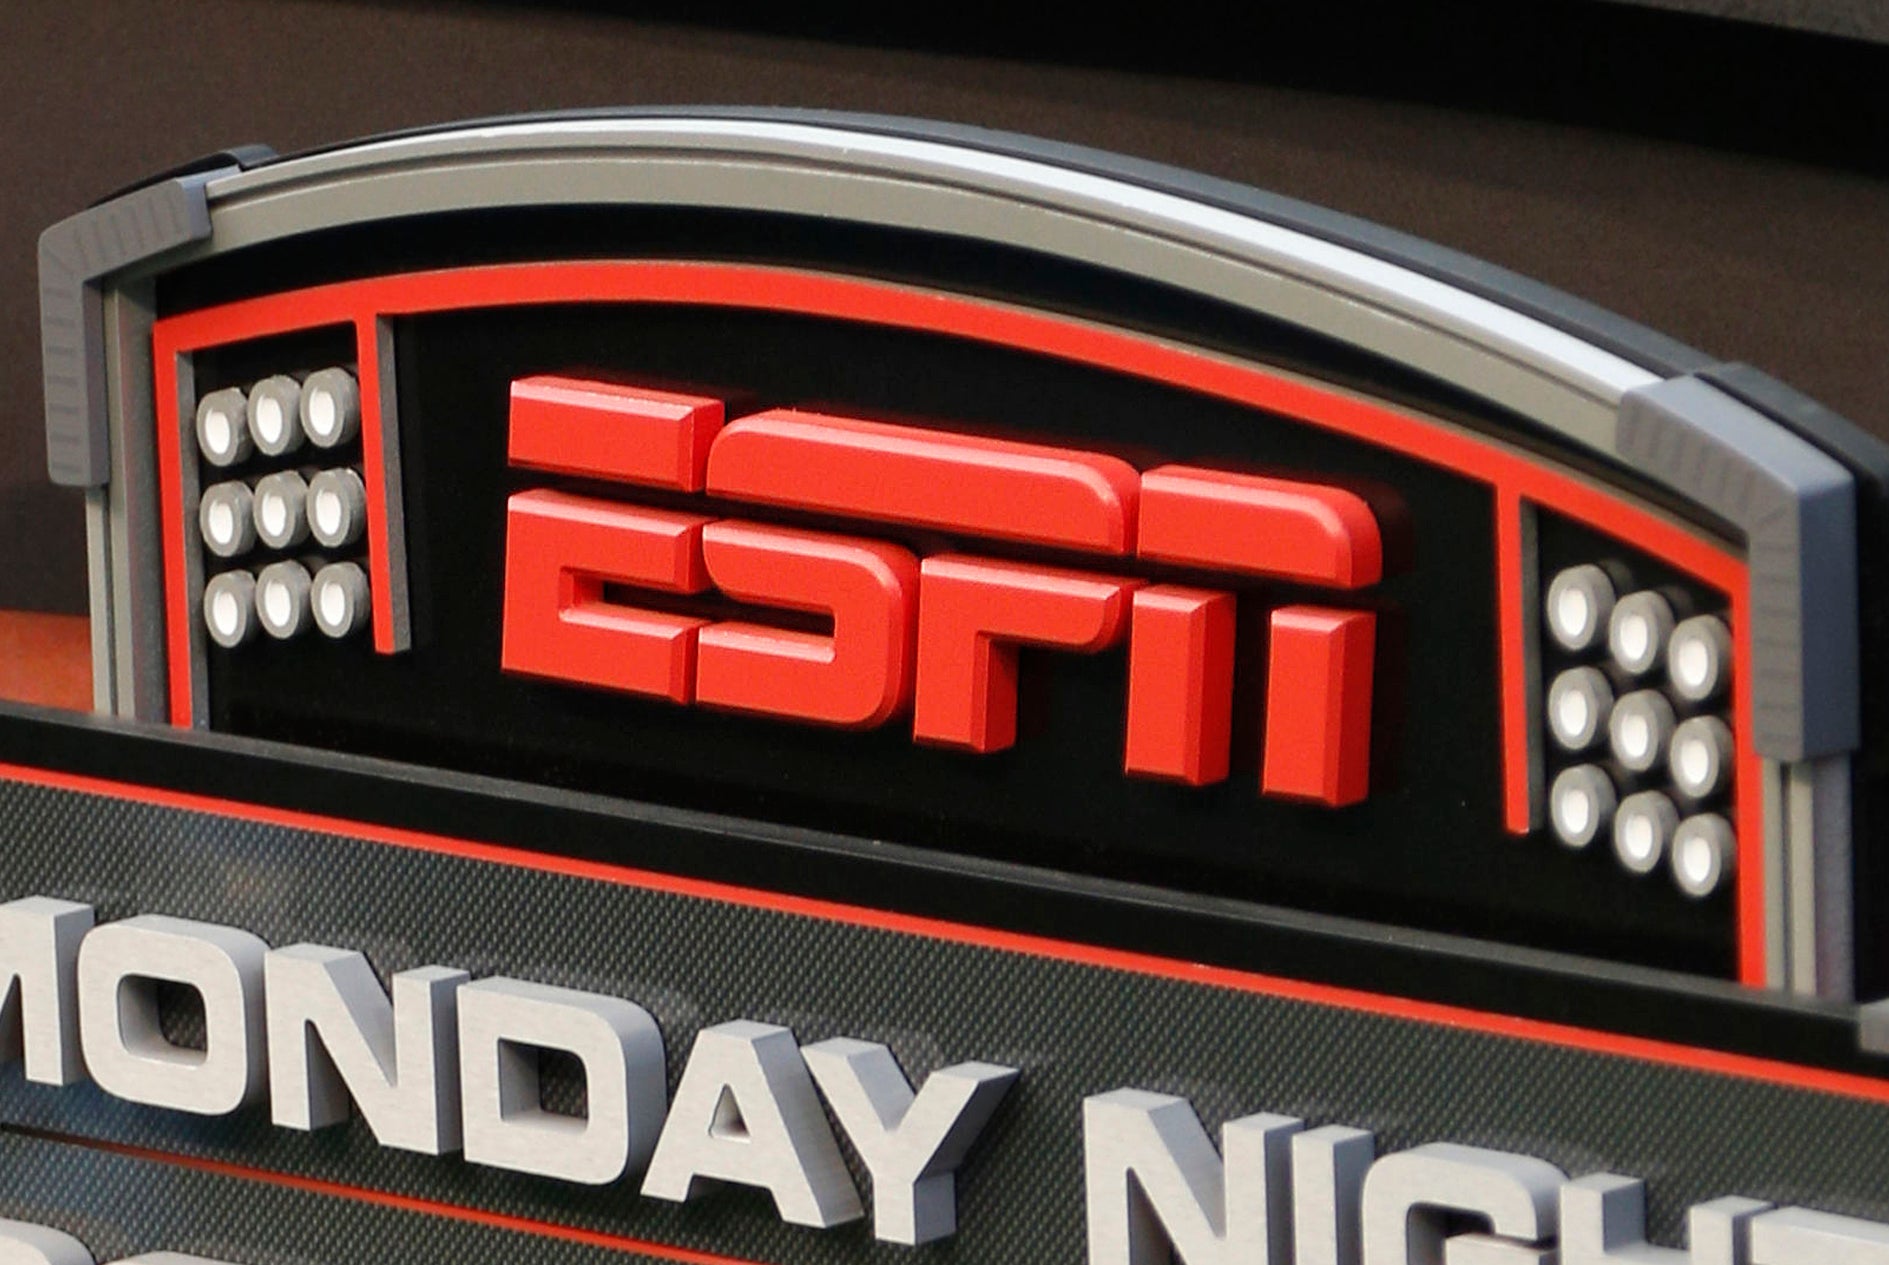 The ESPN logo.